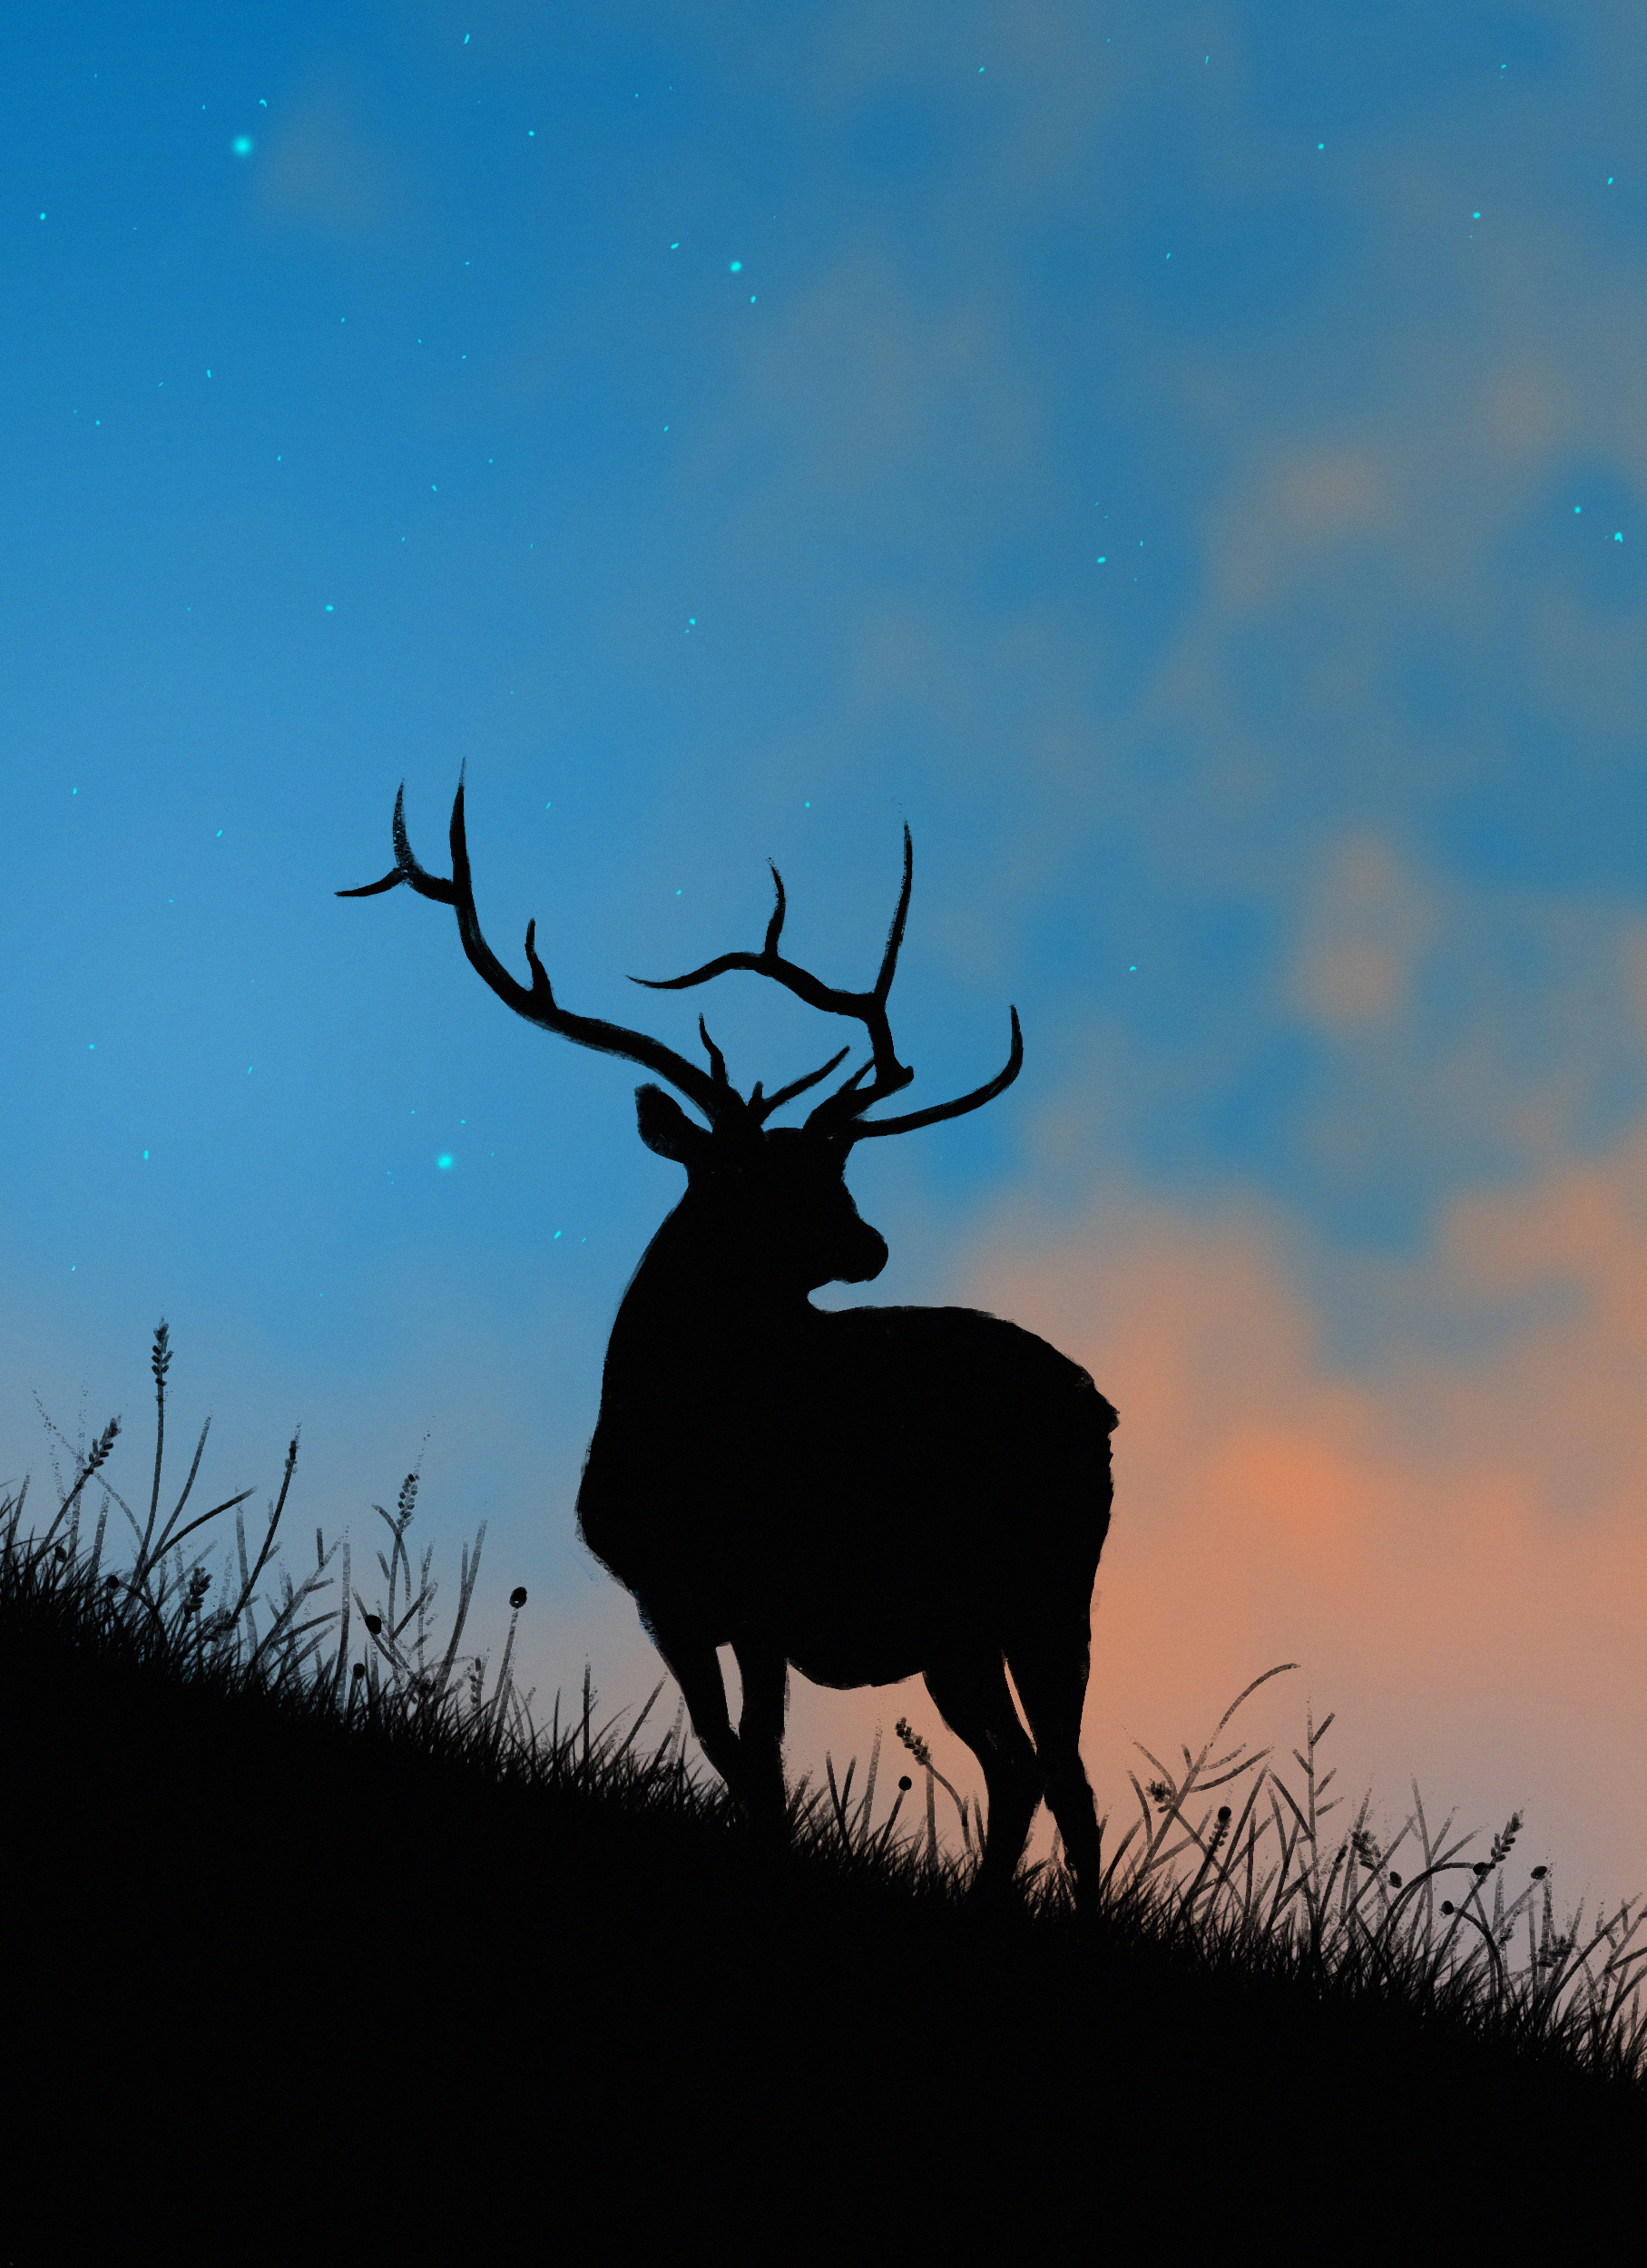 art, horns, deer, stars, twilight, silhouette, dusk